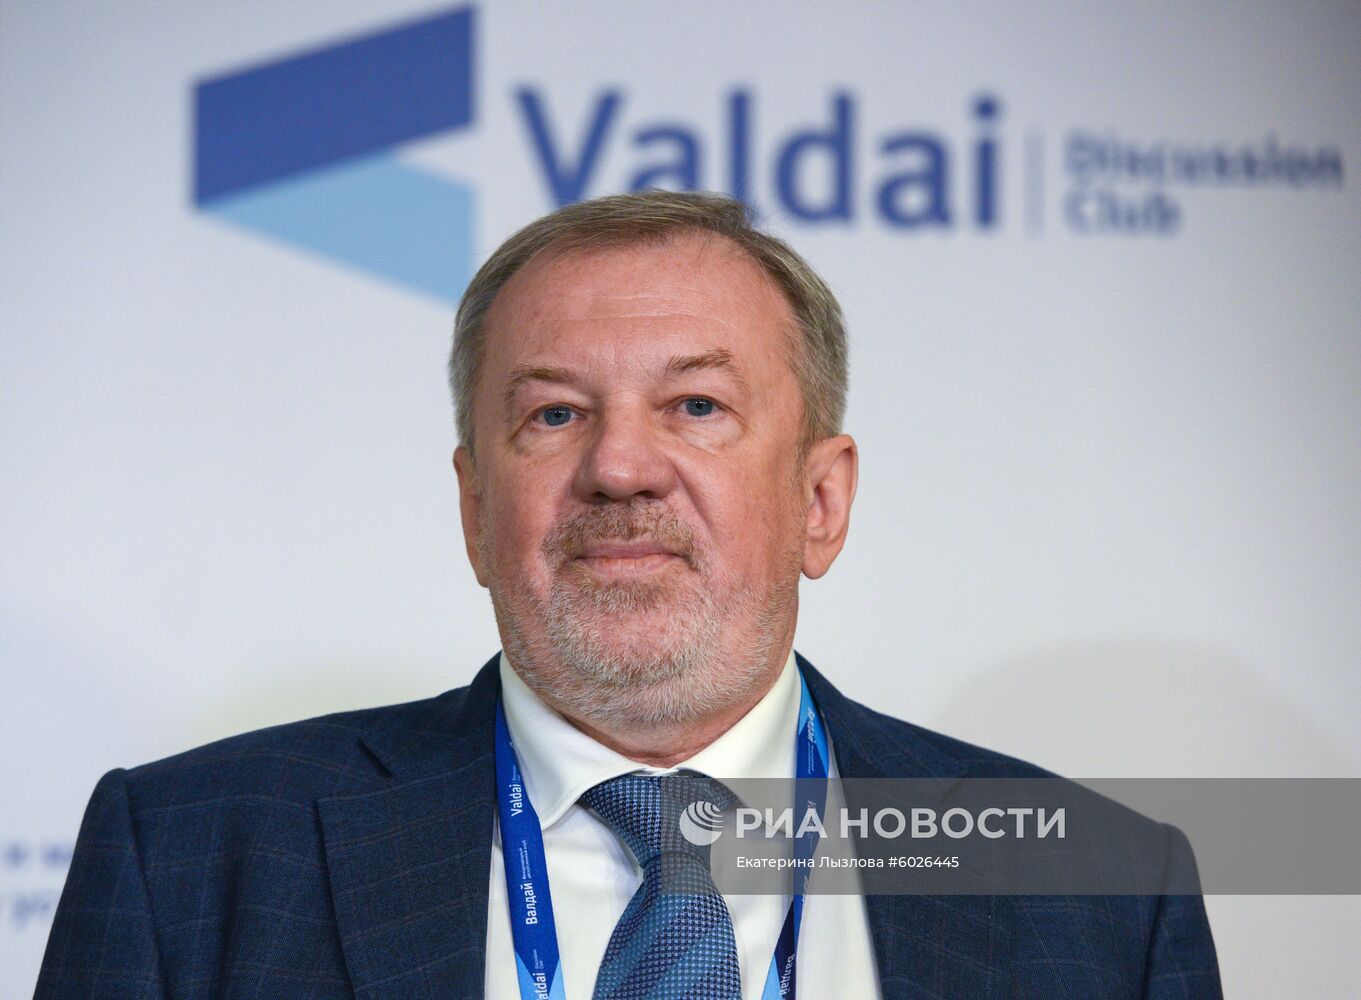 XVI Ежегодное заседание Международного дискуссионного клуба "Валдай"